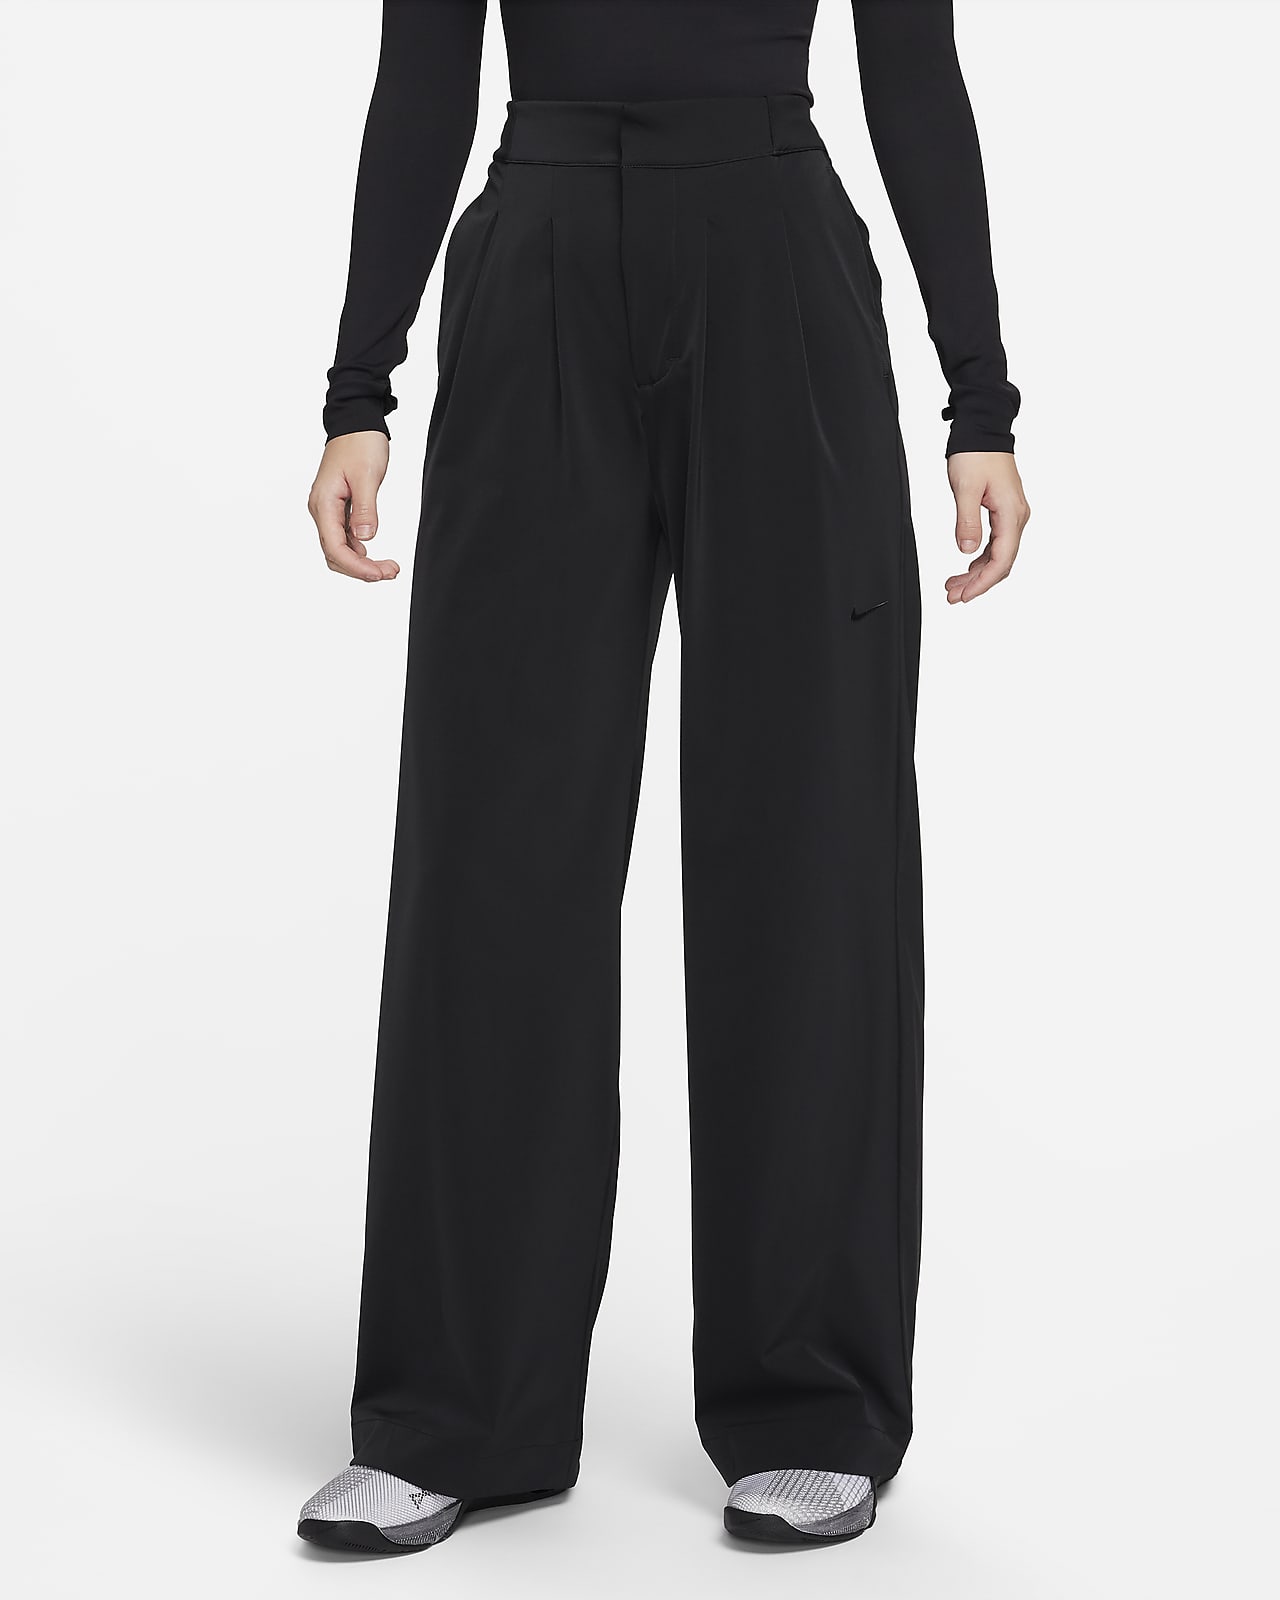 Nike Dri-Fit Swift Slim Fit Running Pants Mens Sz 2XL XXL Black CU5493-010  NEW!! | eBay